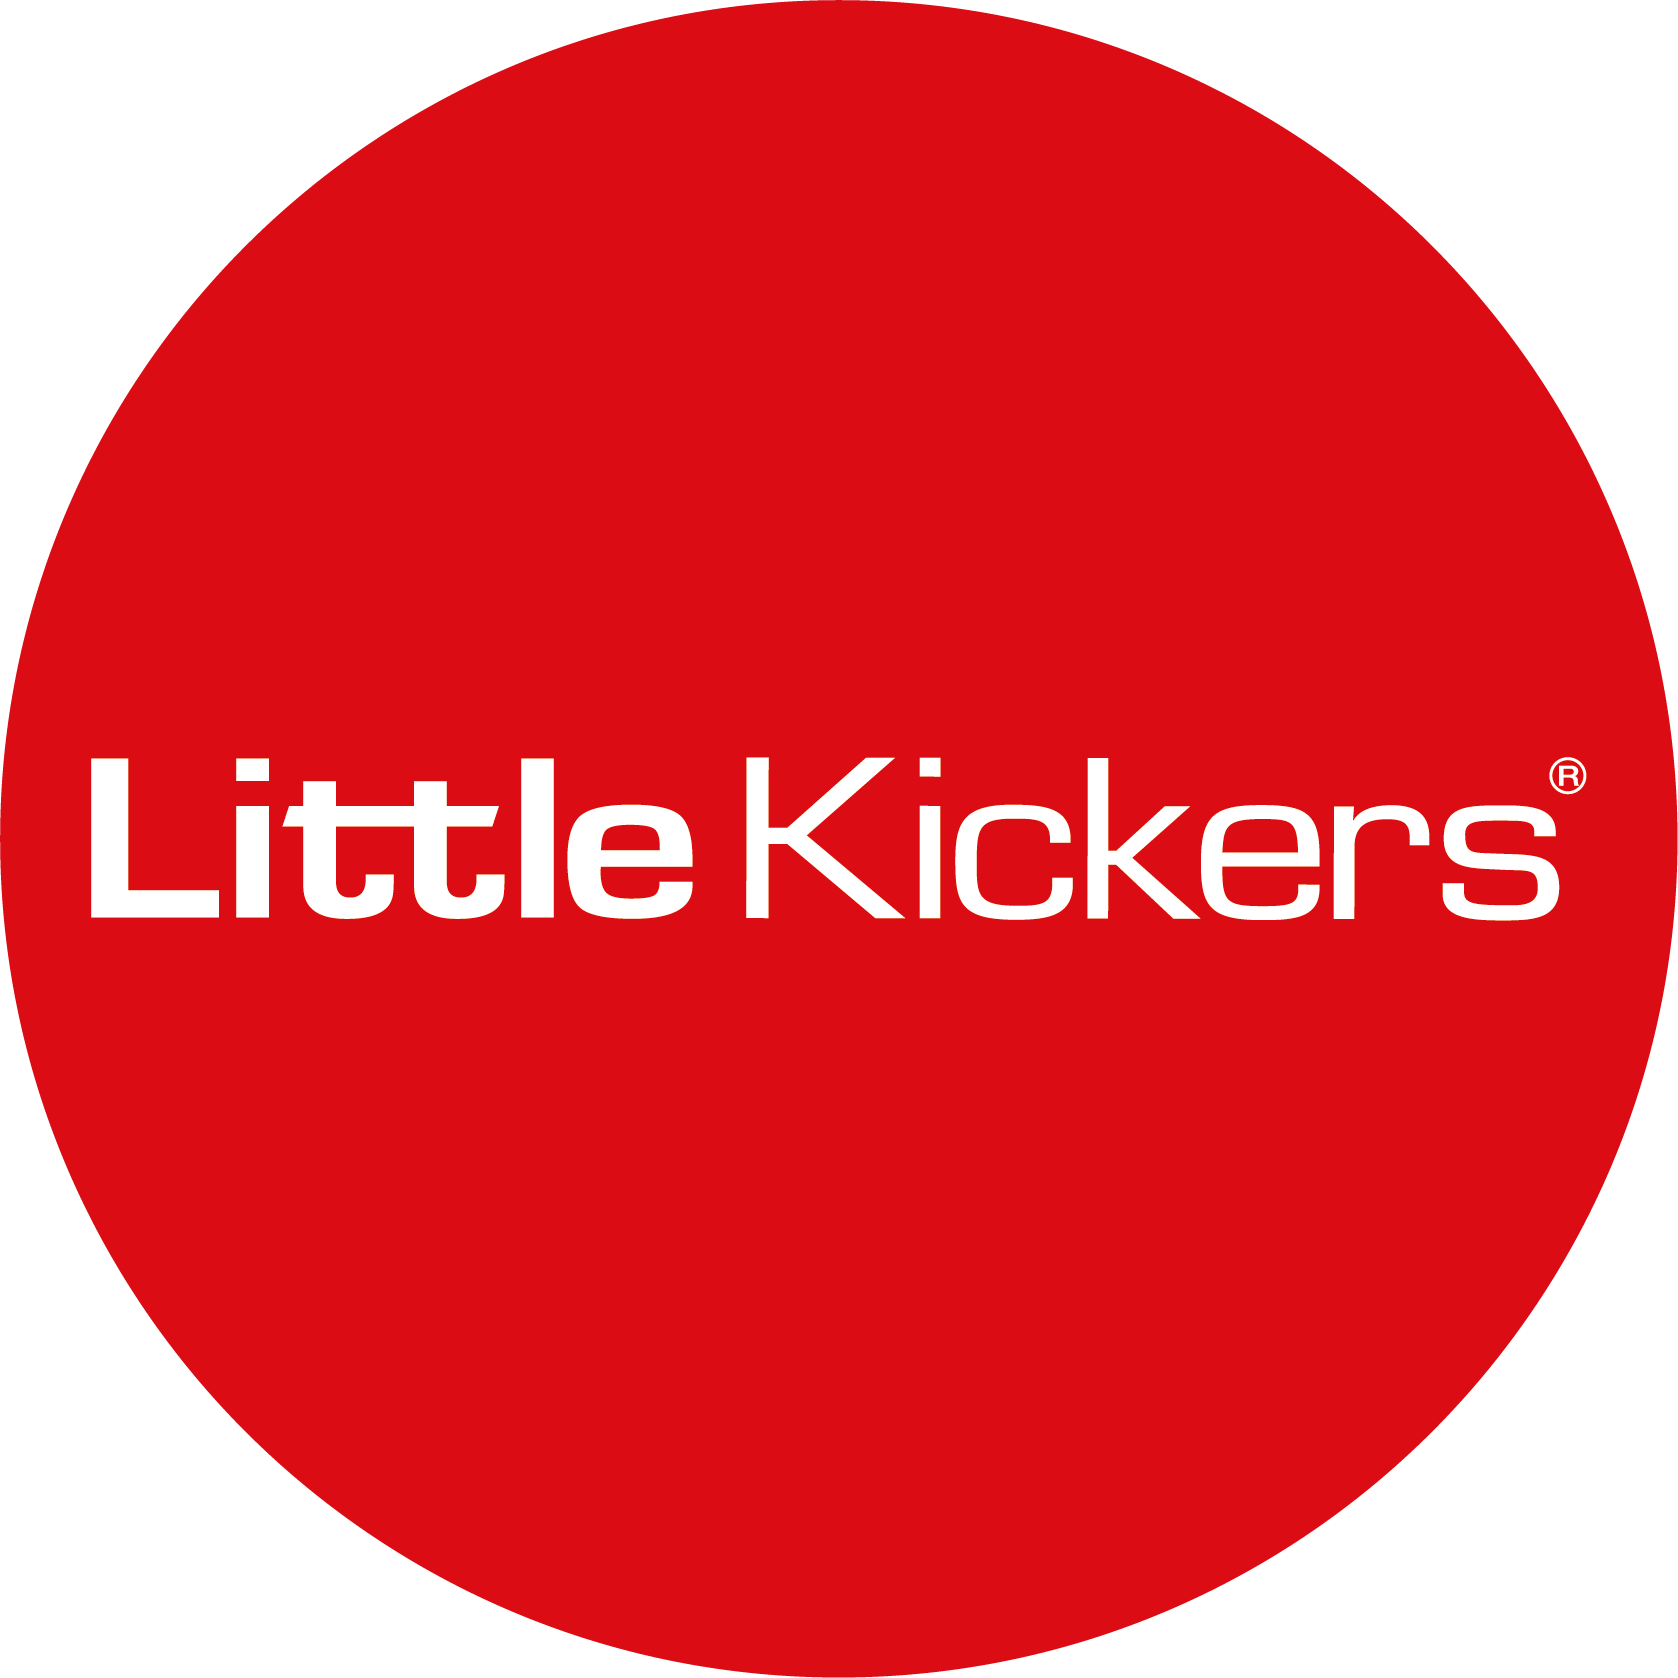 Little Kickers Ipswich (Suffolk)'s logo